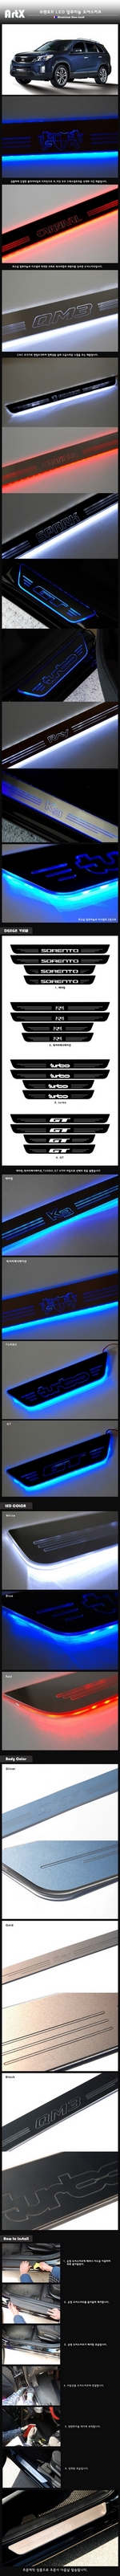 Накладки на пороги алюминиевые с подсветкой (вариант 2) ArtX KIA Sorento 2009-2012